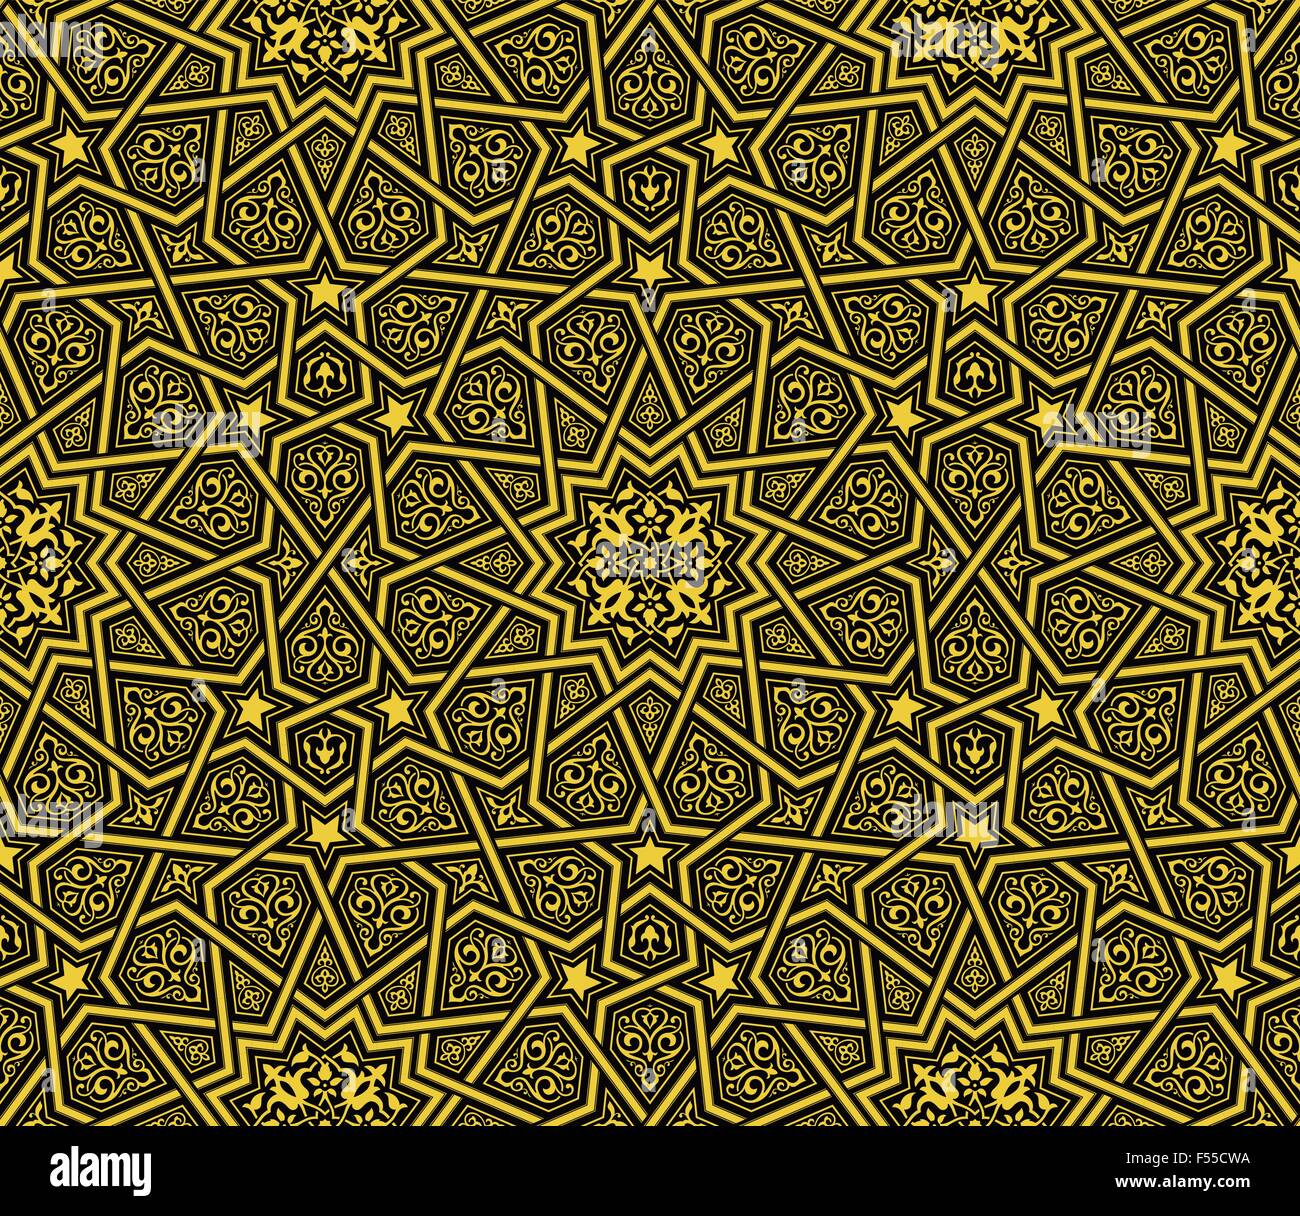 Islamische Ornament golden & schwarzen Hintergrund, Vektor-illustration Stock Vektor